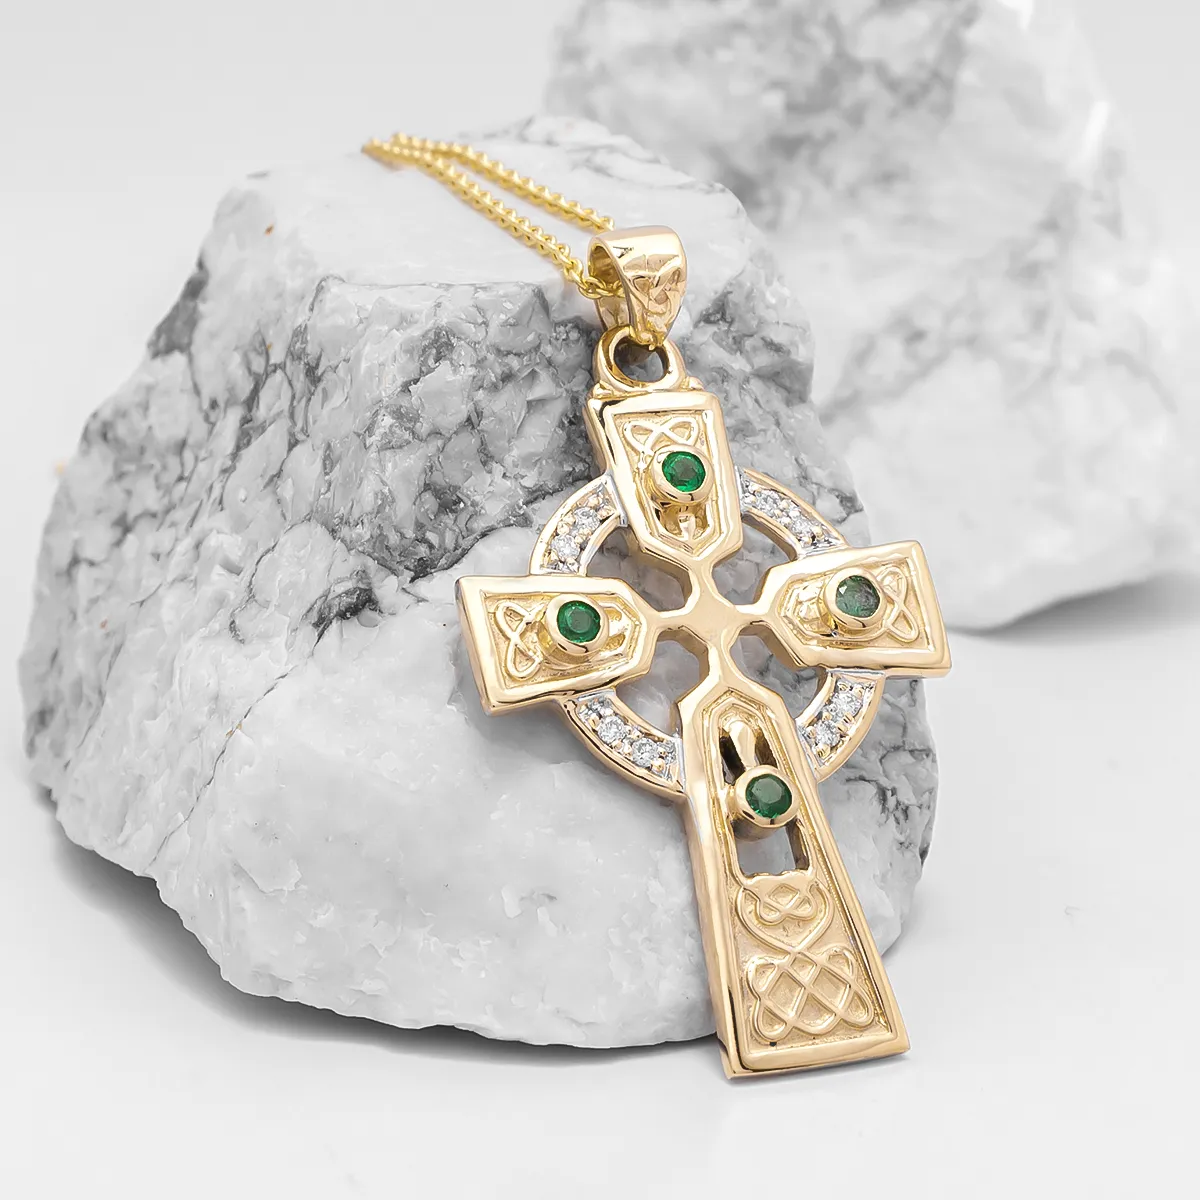 Emerald And Brilliant Cut Diamond Cross Pendant On Chain...